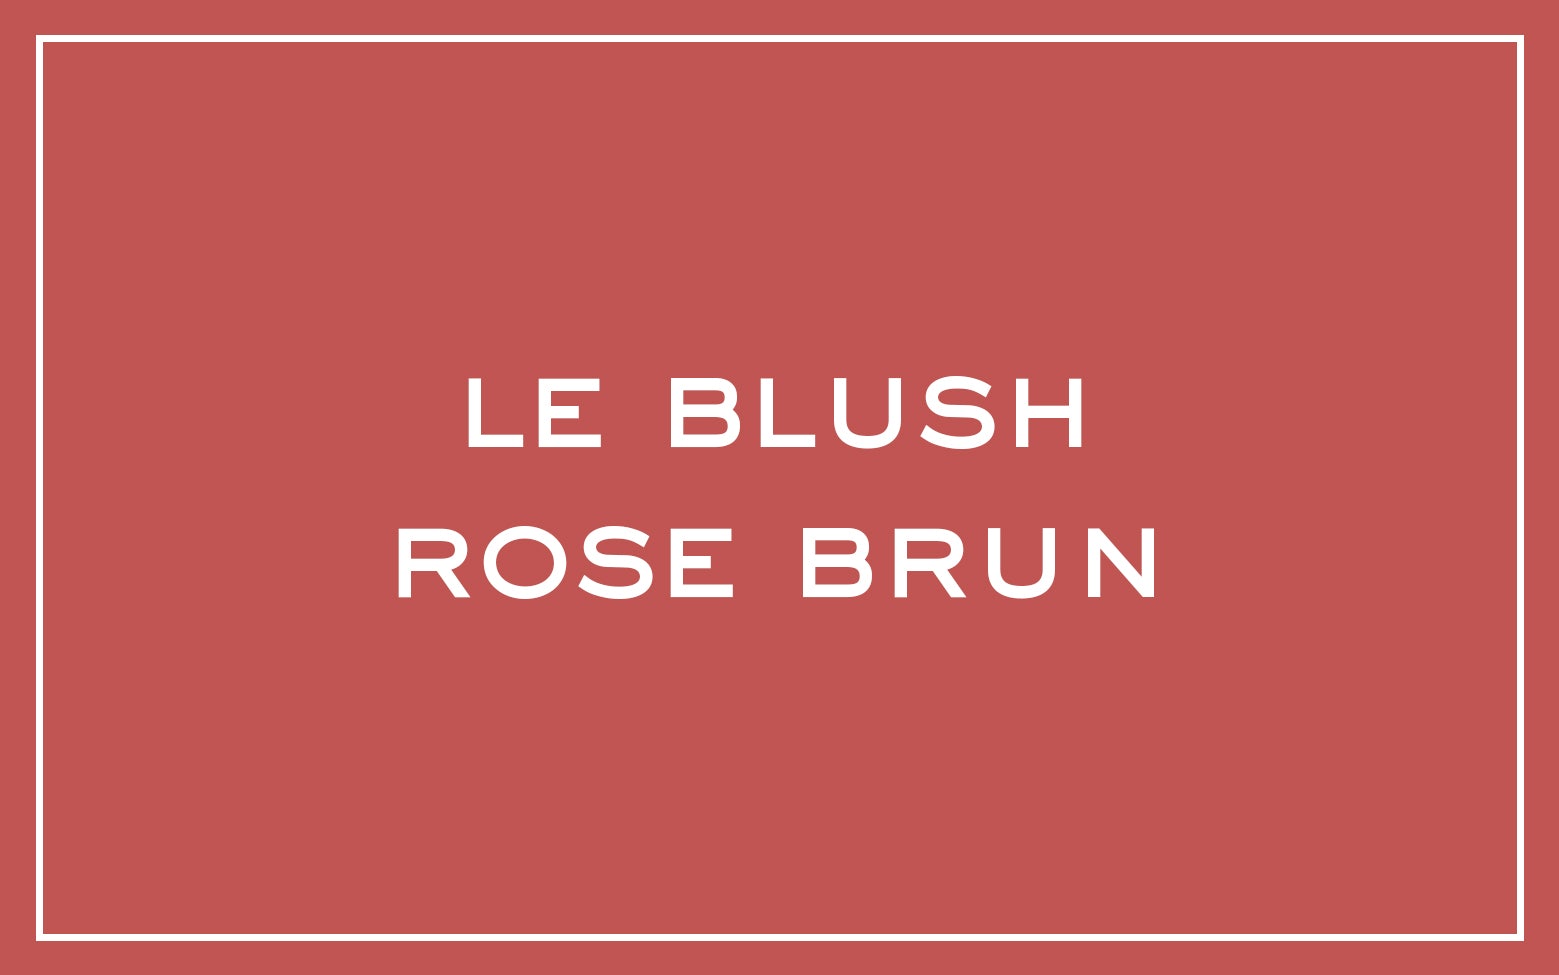 La bouche rouge nuance Le Blush Rose Brun avec du texte